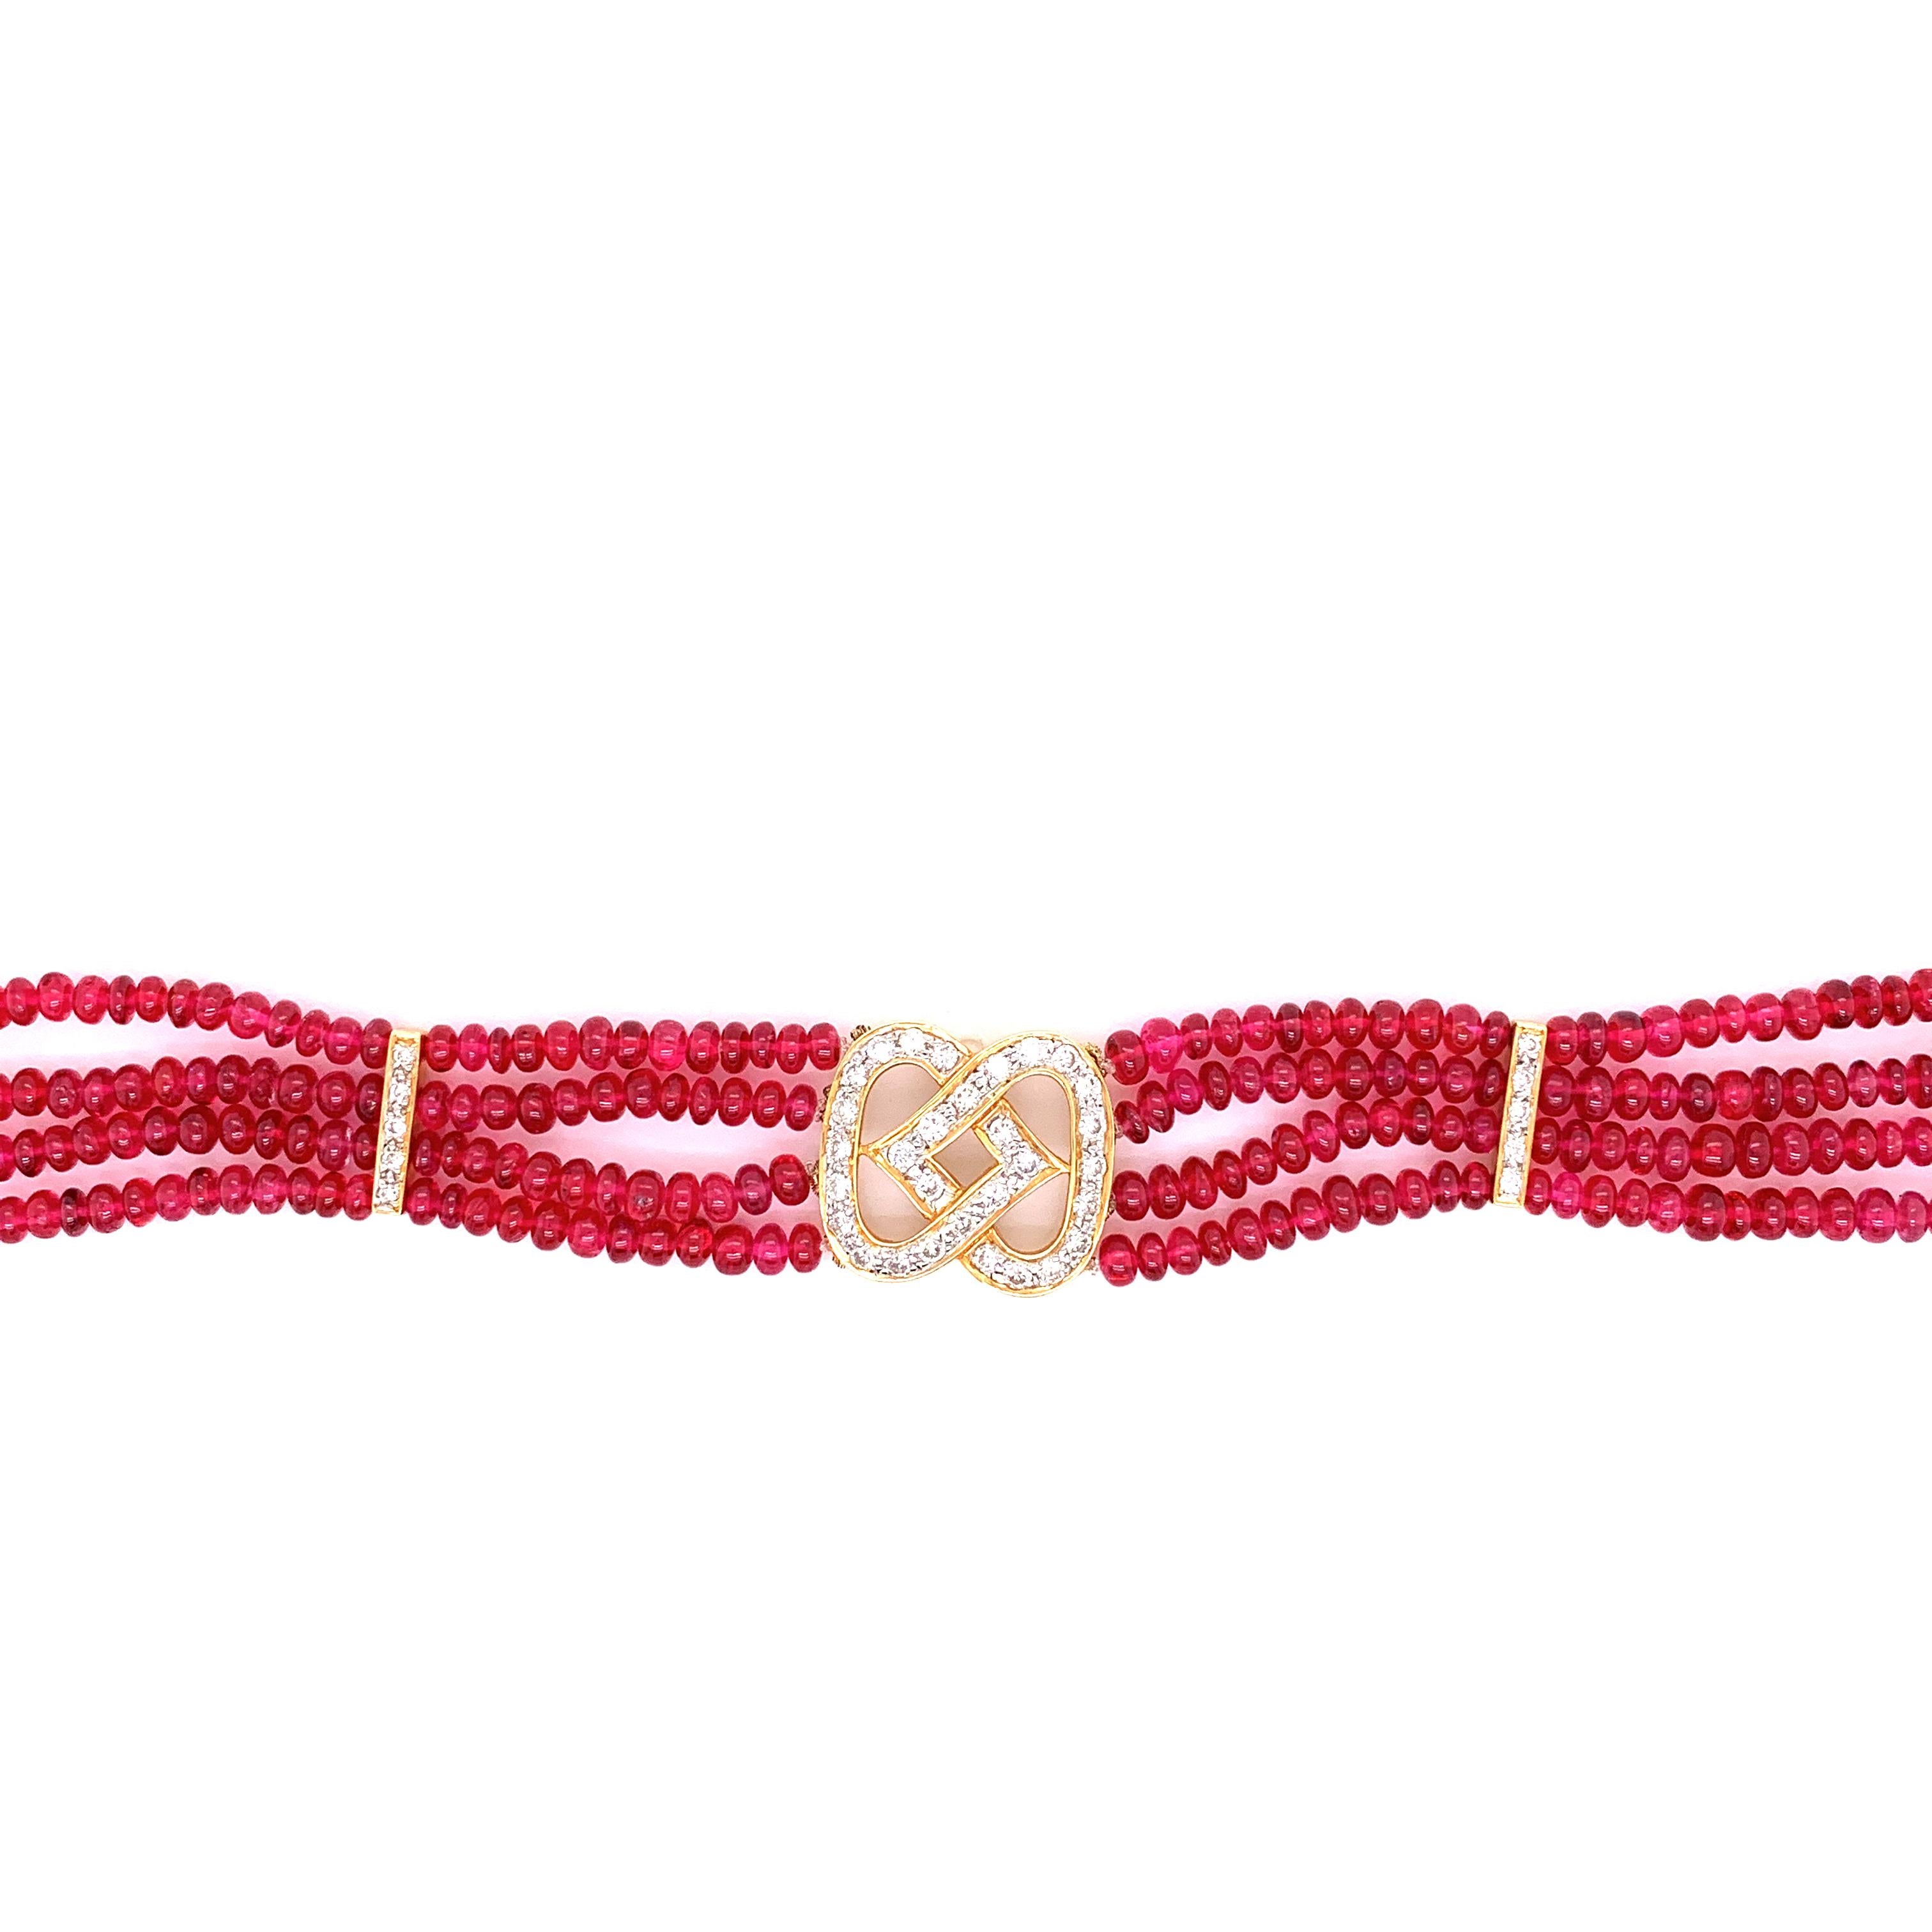 48 Karat burmesischer roter Spinell Perlen und weißer Diamant Goldarmband :

Ein sehr elegantes Armband mit natürlichen, unerhitzten, lebhaften roten Spinellperlen aus Birma mit einem Gewicht von 48 Karat und einer schönen Diamantschließe mit zwei